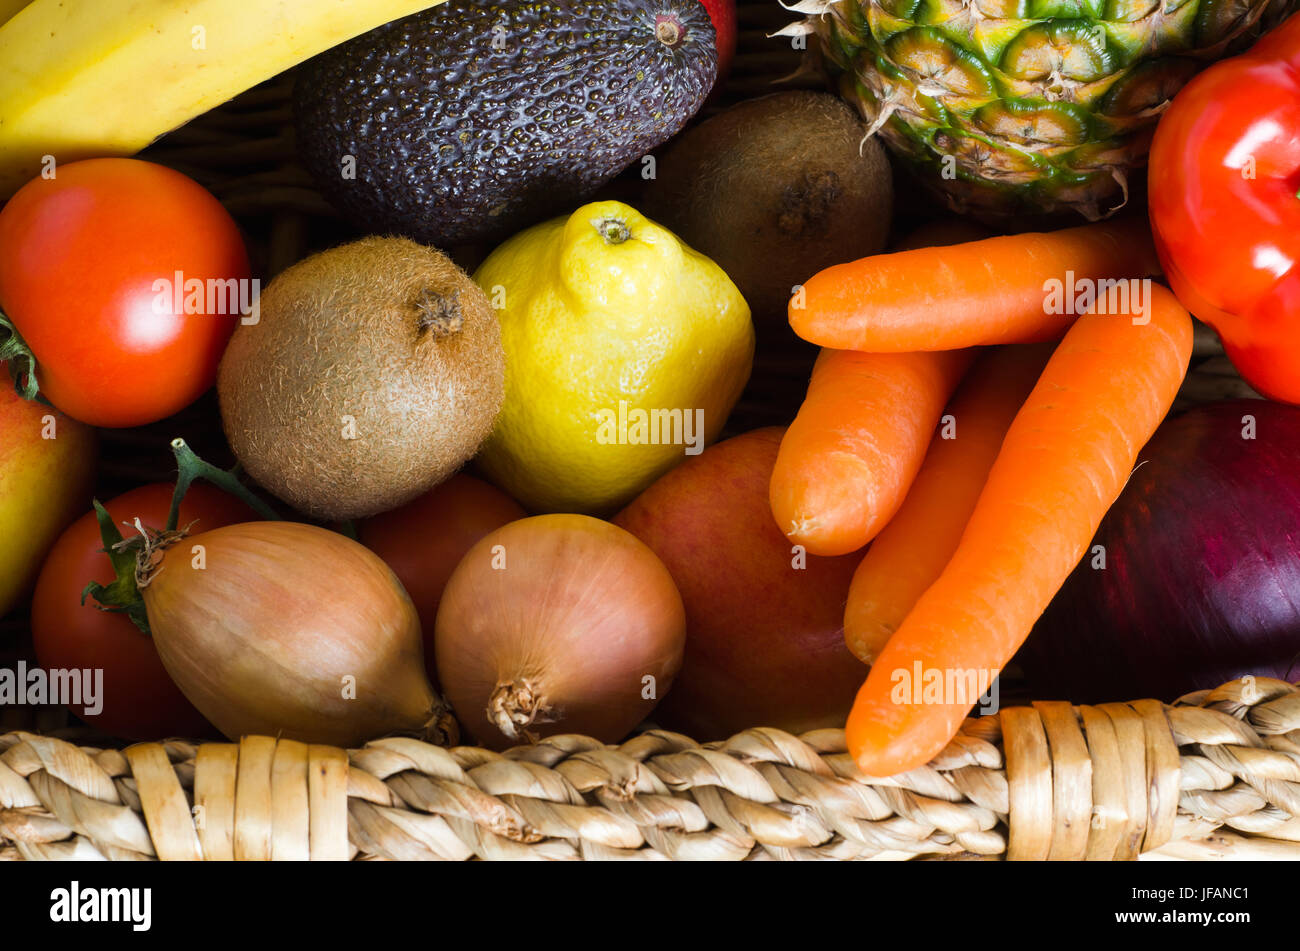 Overhead Schuss eines Korbs vollgestopft mit rohen, frischen, bunten Obst und Gemüse.  Im Querformat. Stockfoto